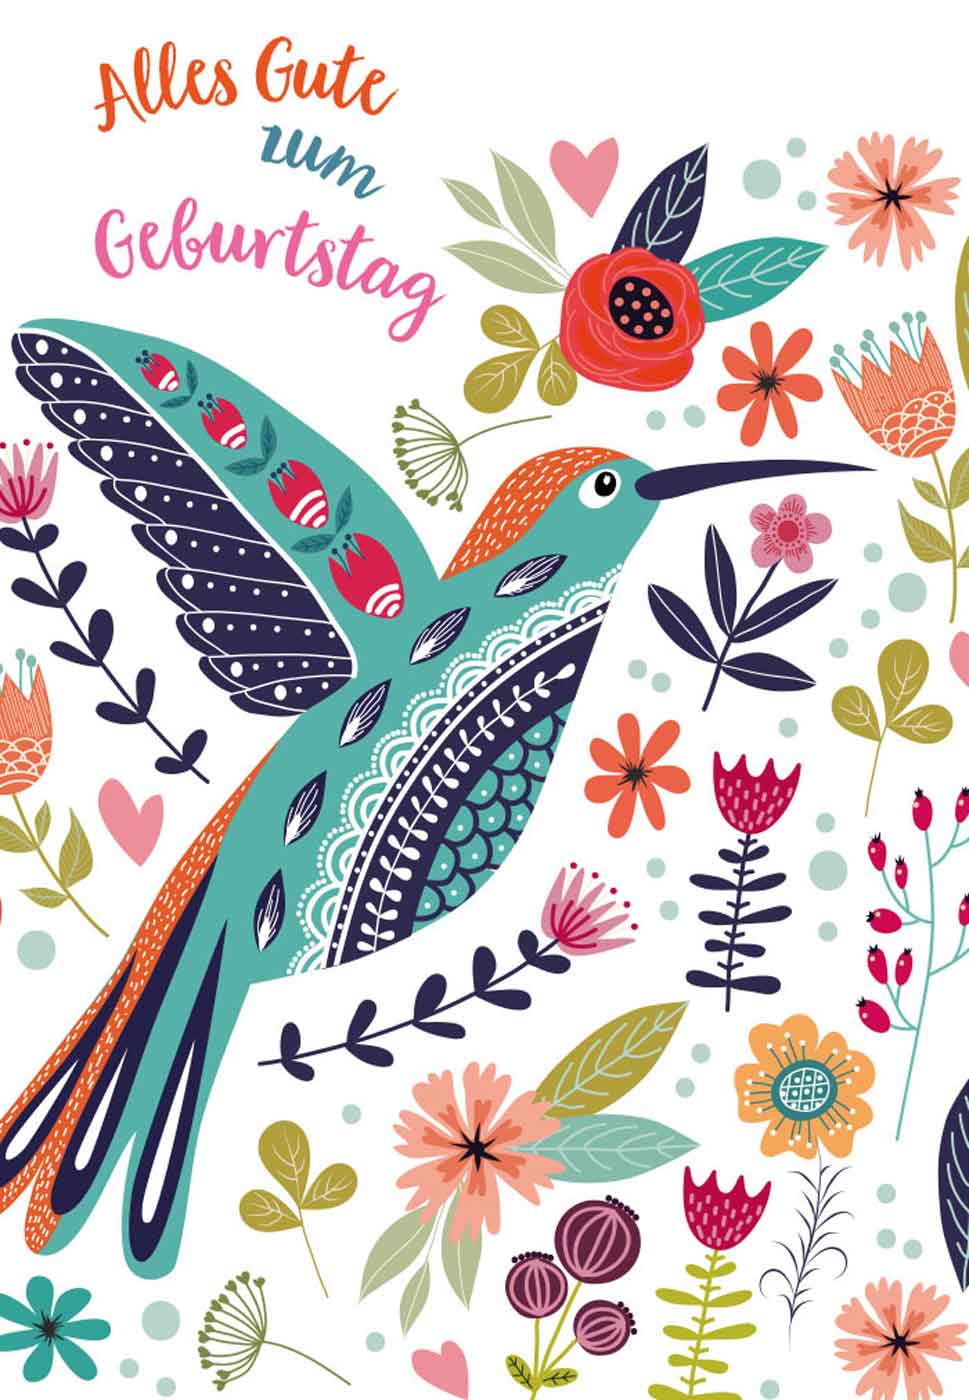 Geburtstagskarte Vogelillustration Blumen